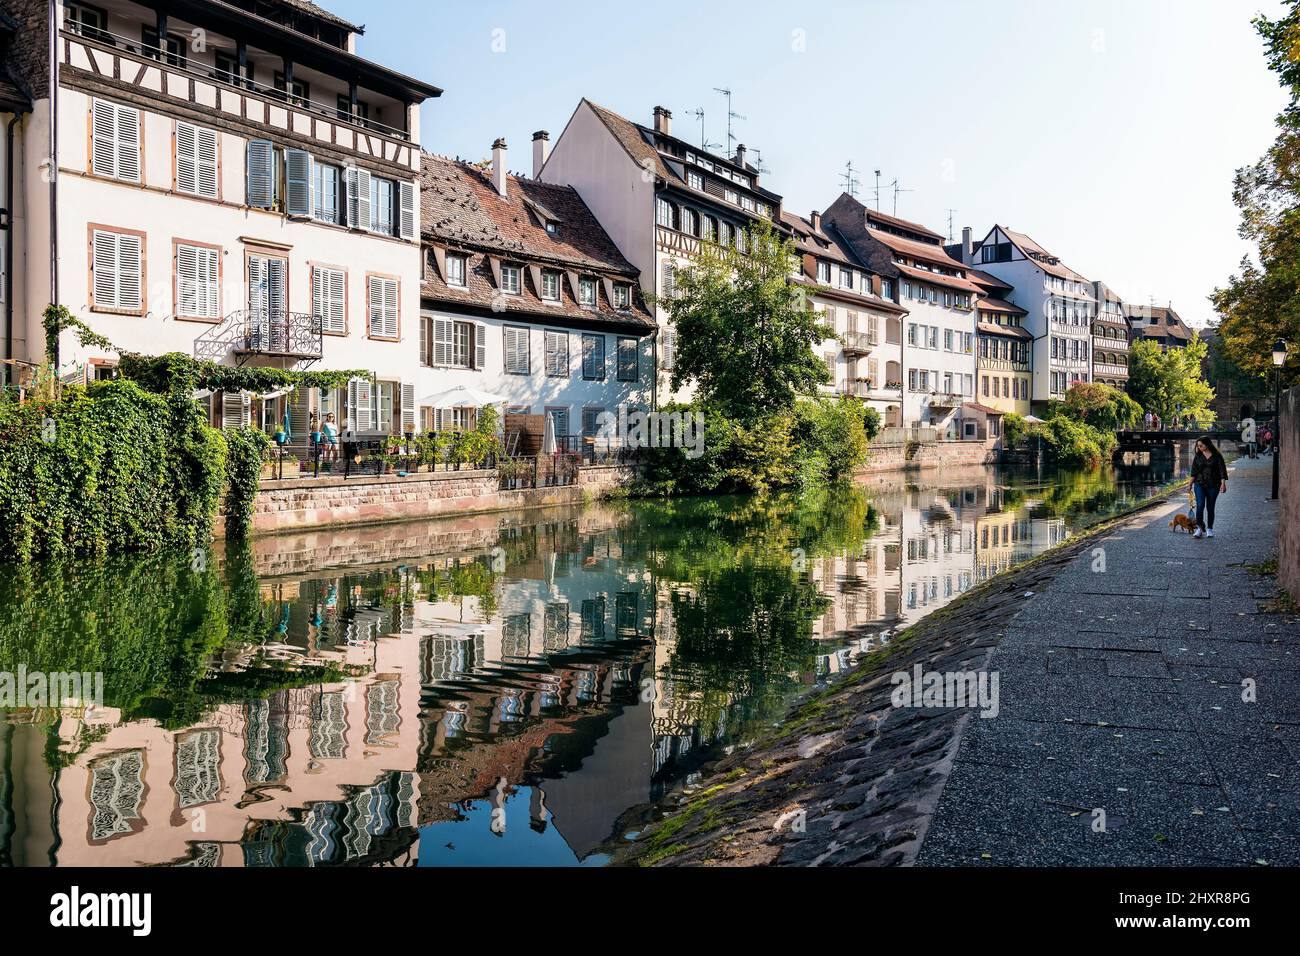 Francia, Strasburgo, il centro storico dichiarato Patrimonio dell'Umanità dall'UNESCO, lungo le rive del fiume Ill. Foto Stock